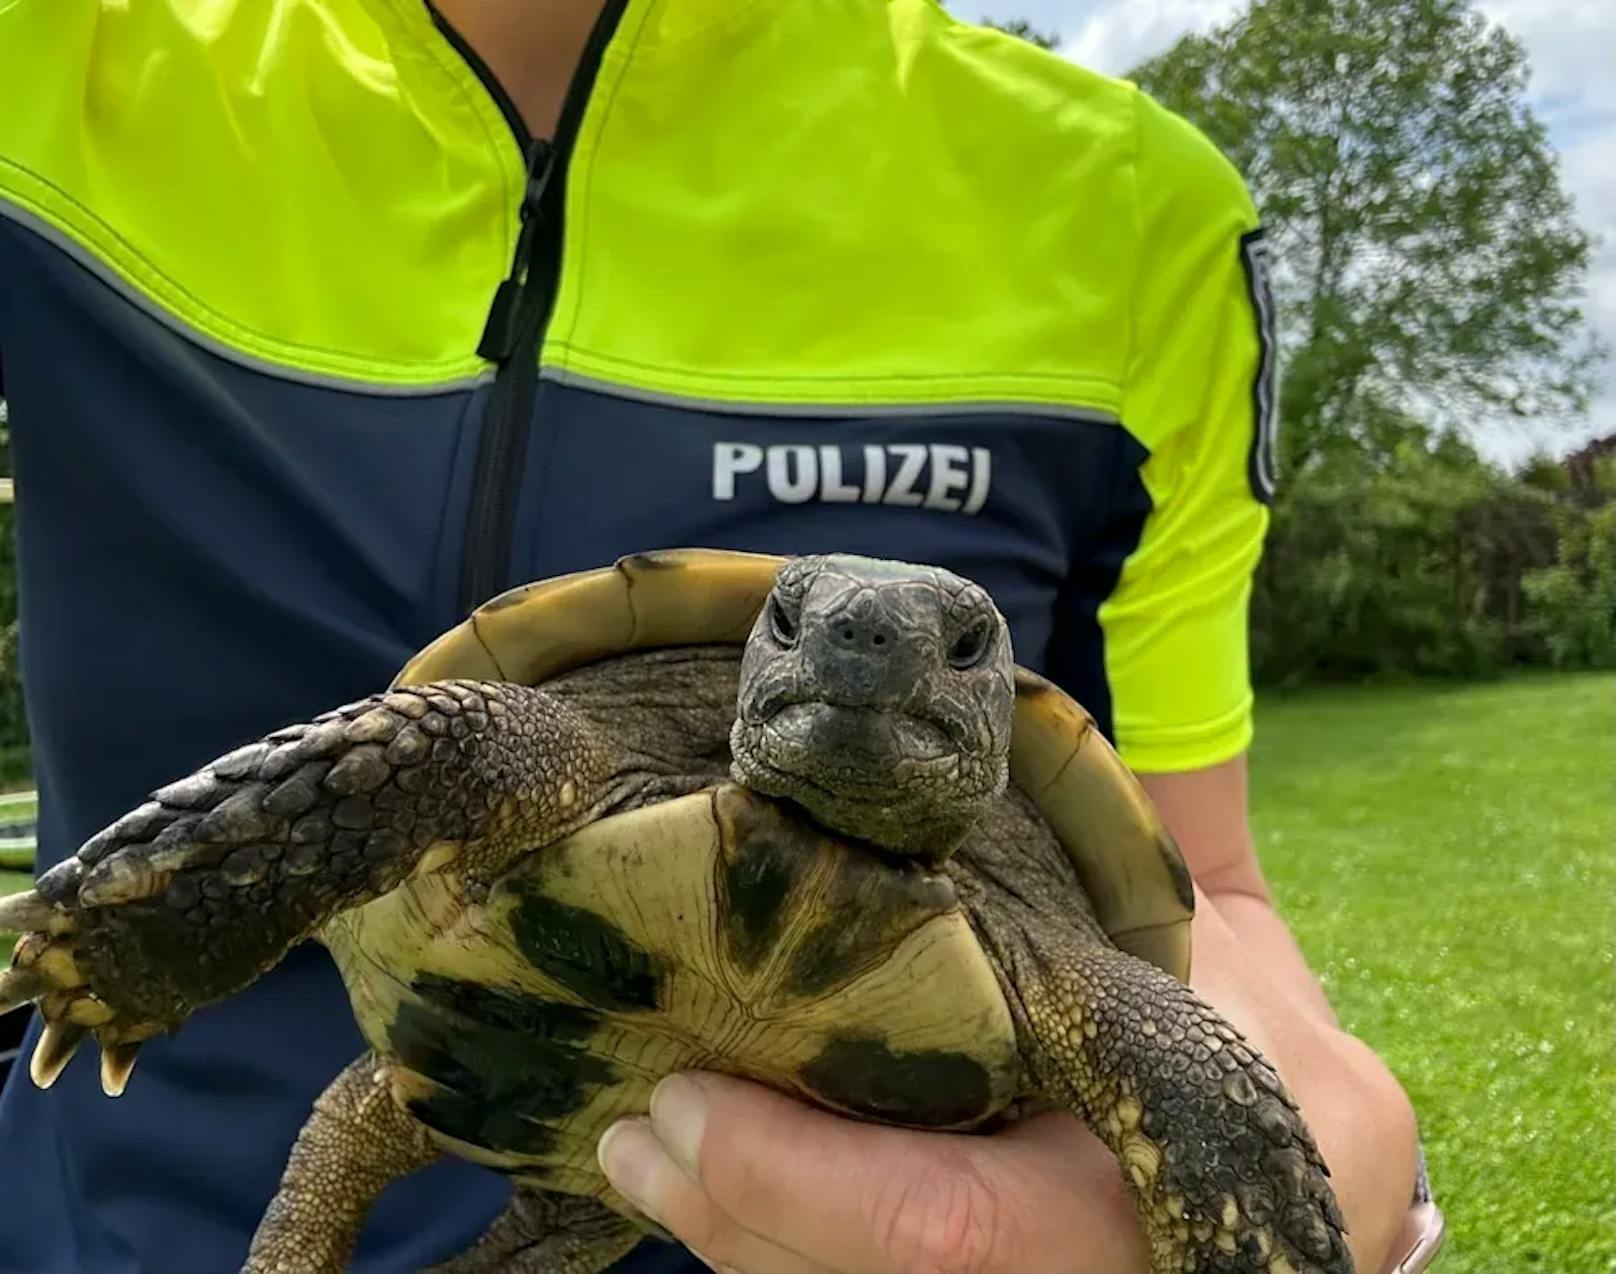 Schildkröte geht 11 Kilometer, bis Polizei sie stoppt